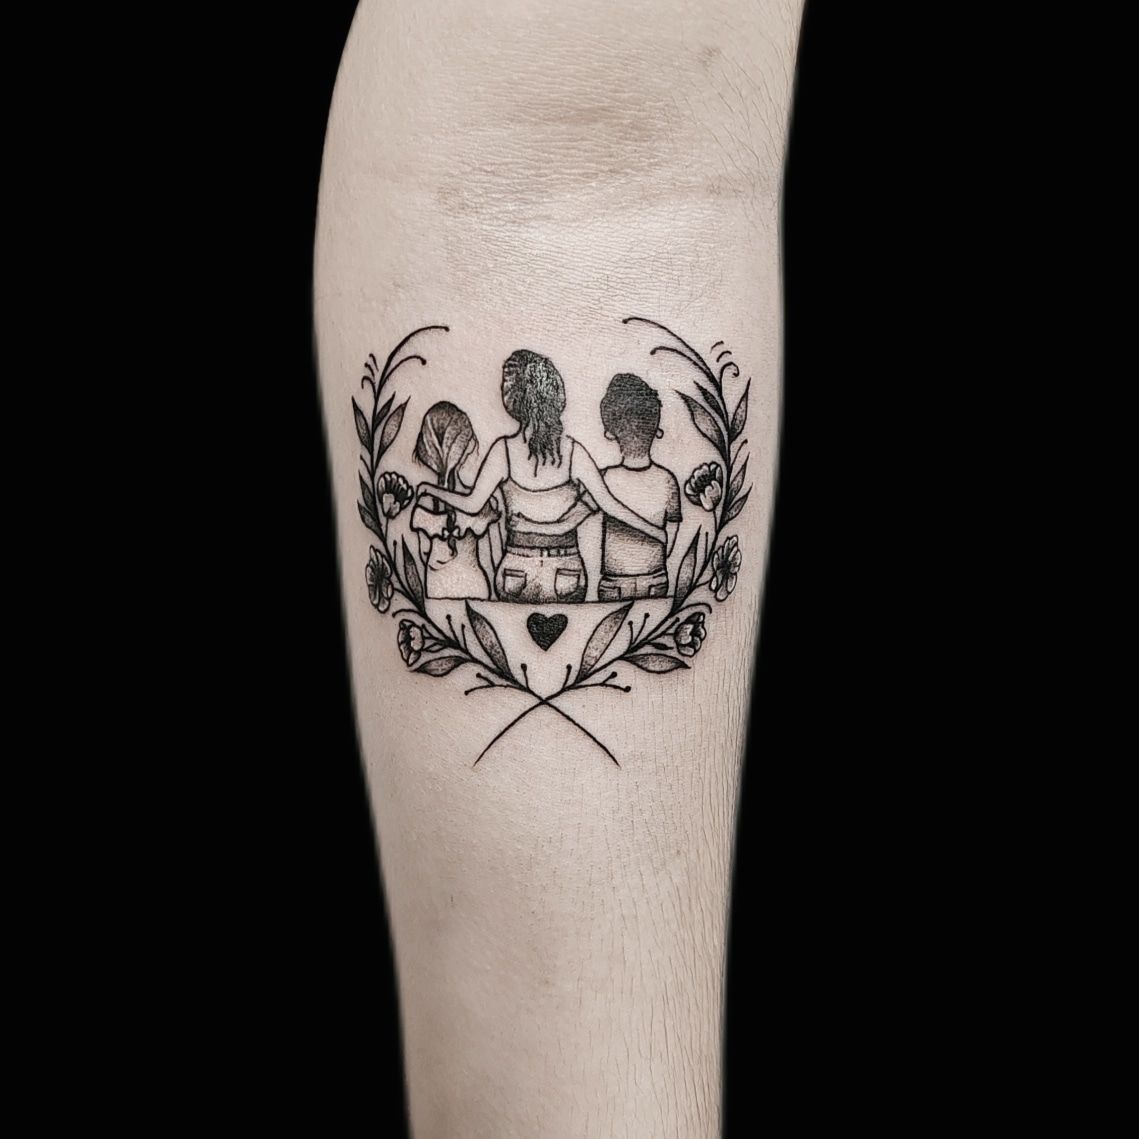 Alkar tetoválás, Fantázia tetoválás, Fekete fehér tetoválás, Szimbólumok, Virág tetoválás